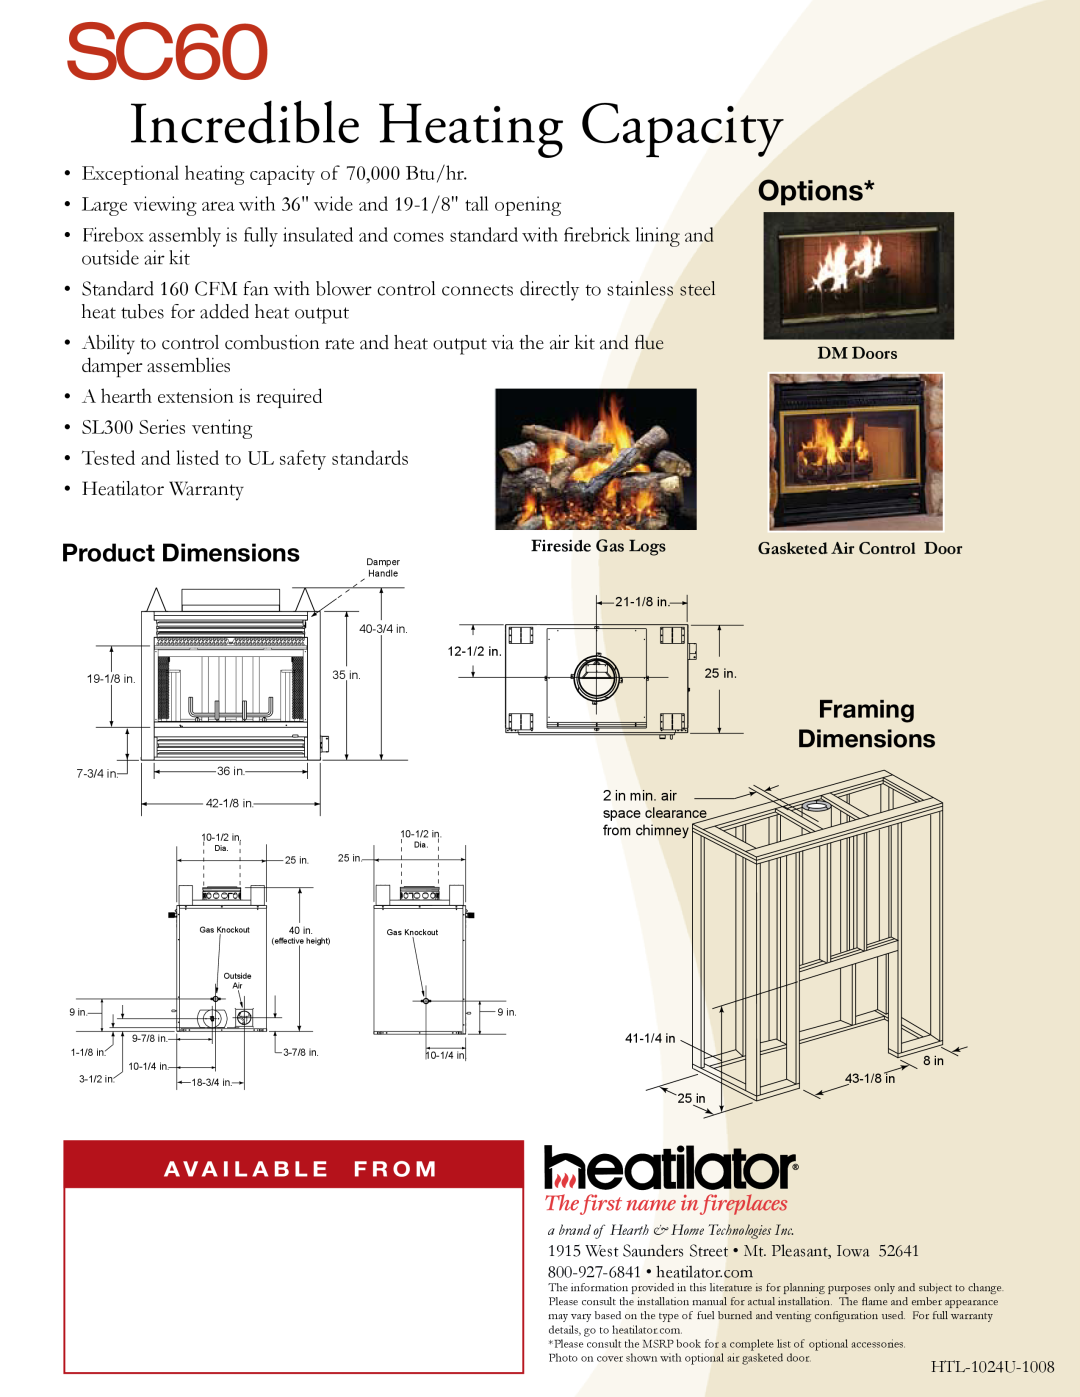 Heatiator SC60 Incredible Heating Capacity, Options, Product Dimensions, Framing Dimensions, A V A I L A B L E F R O M 